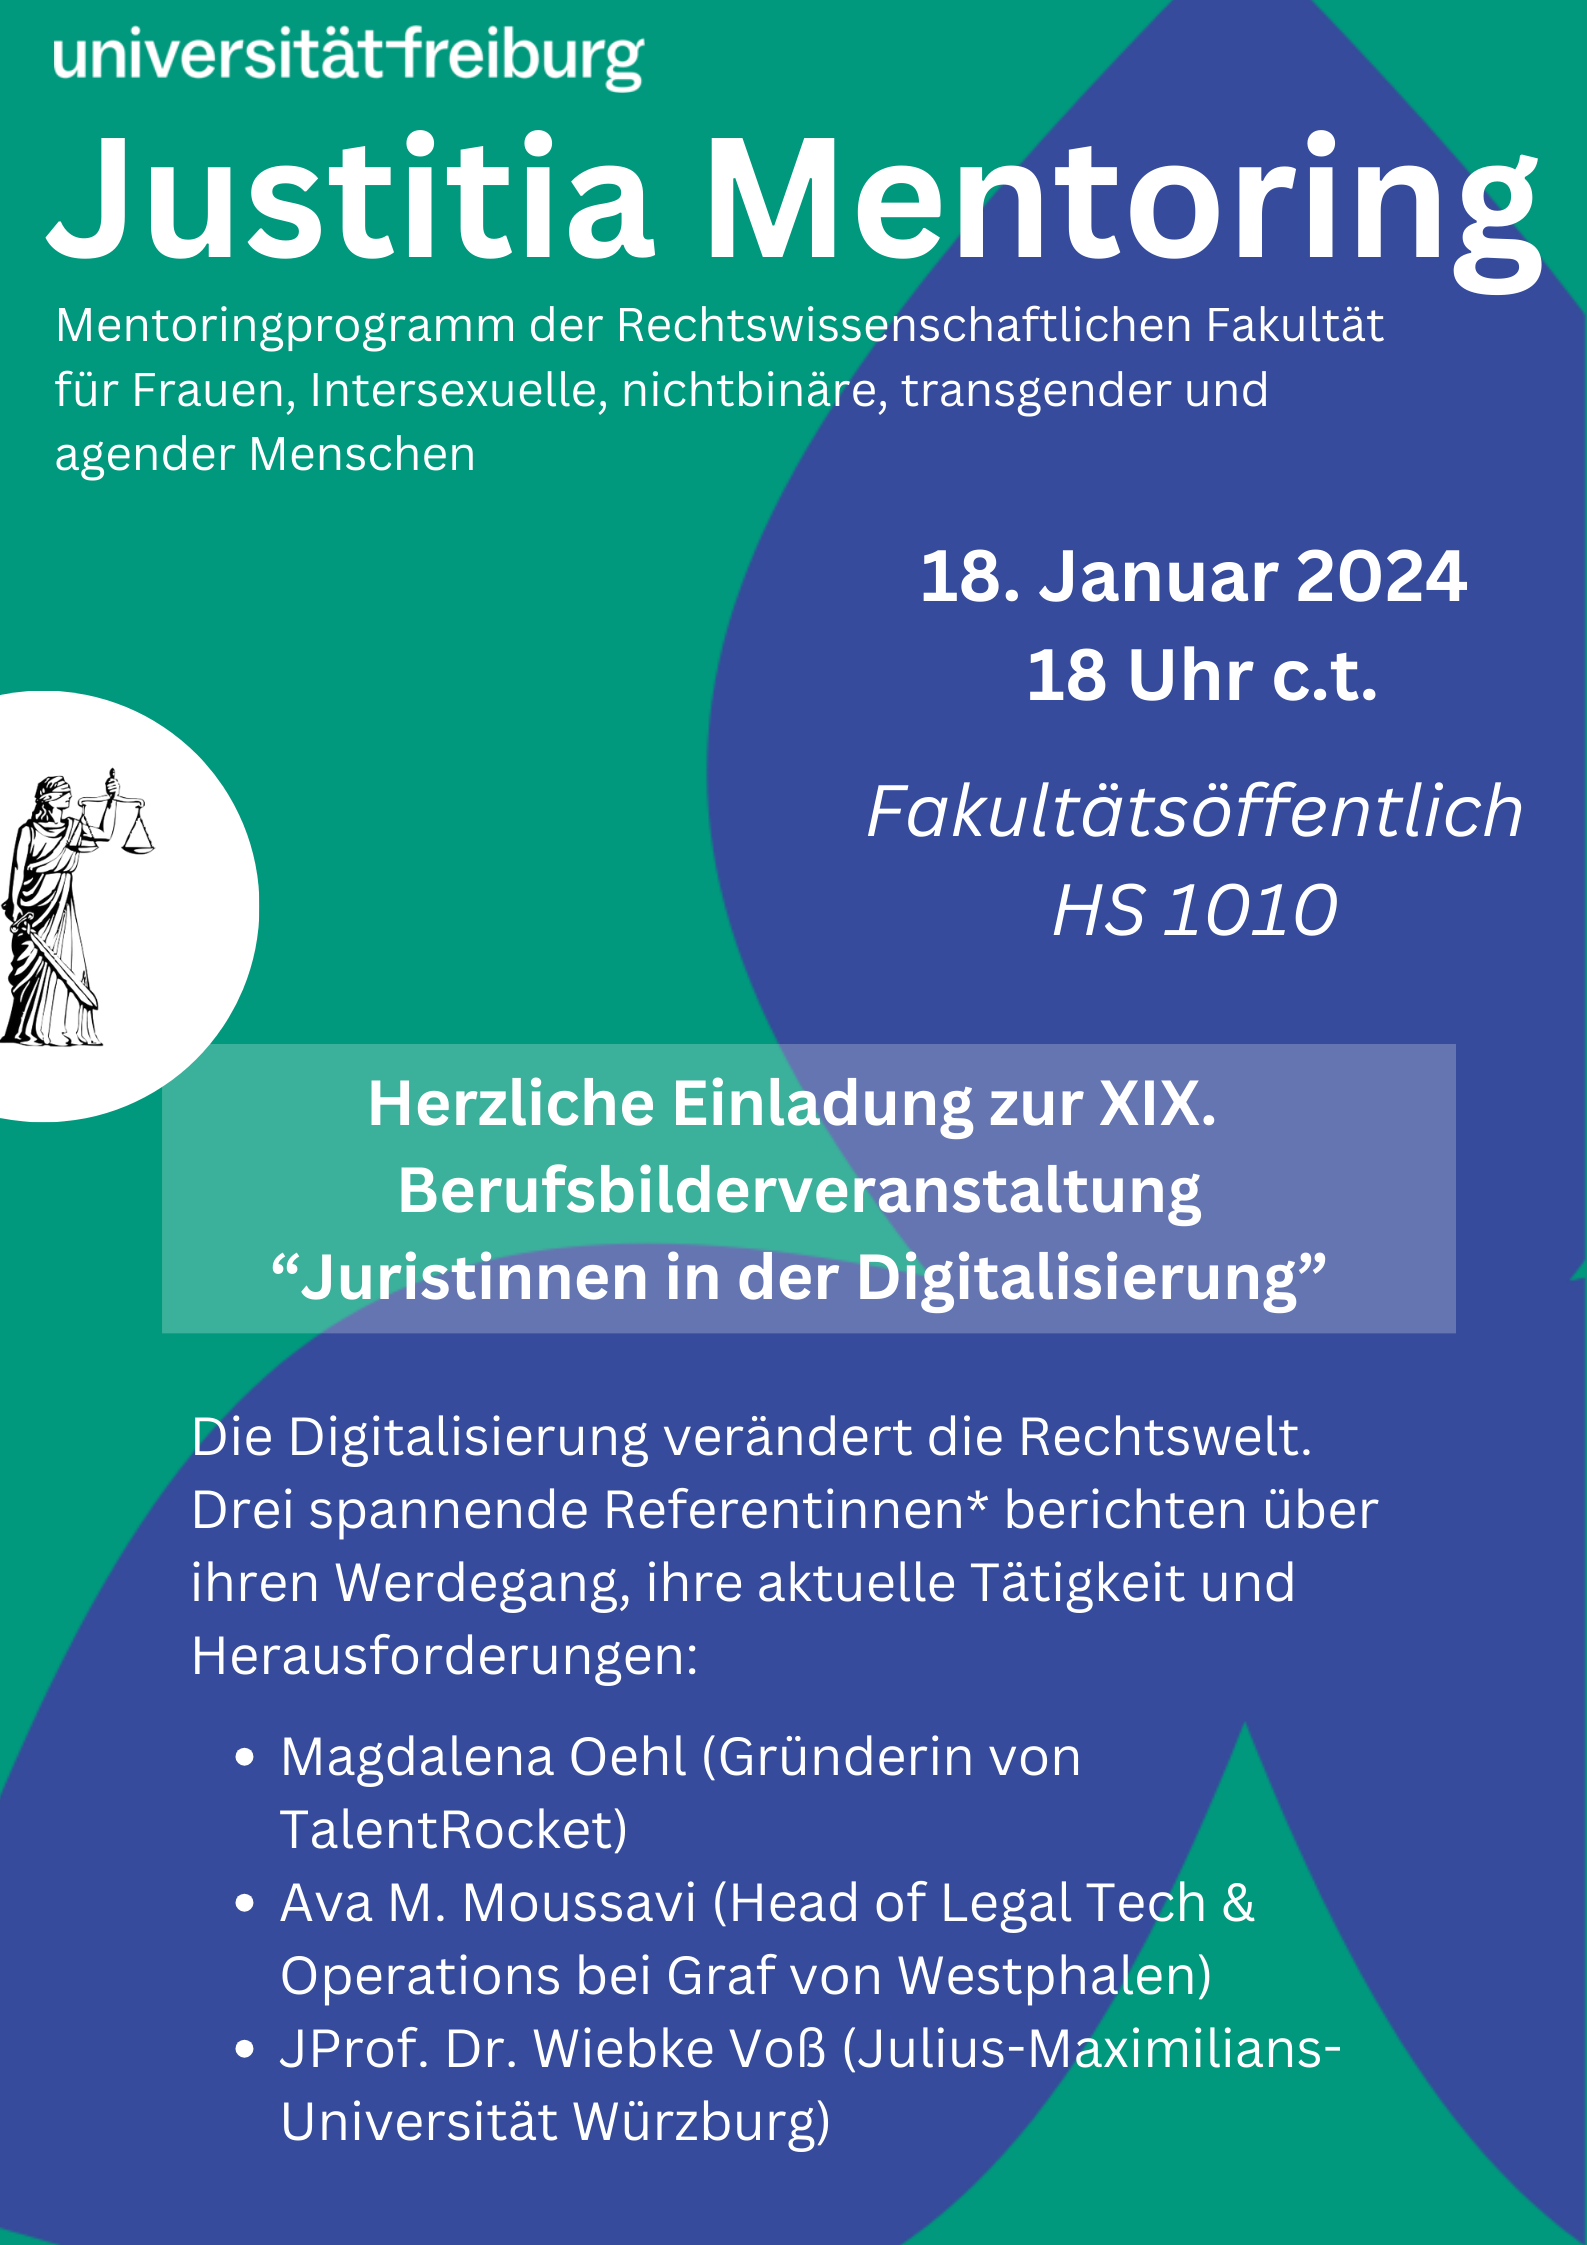 XIX. Berufsbilderveranstaltung "Juristinnen in der Digitalisierung"